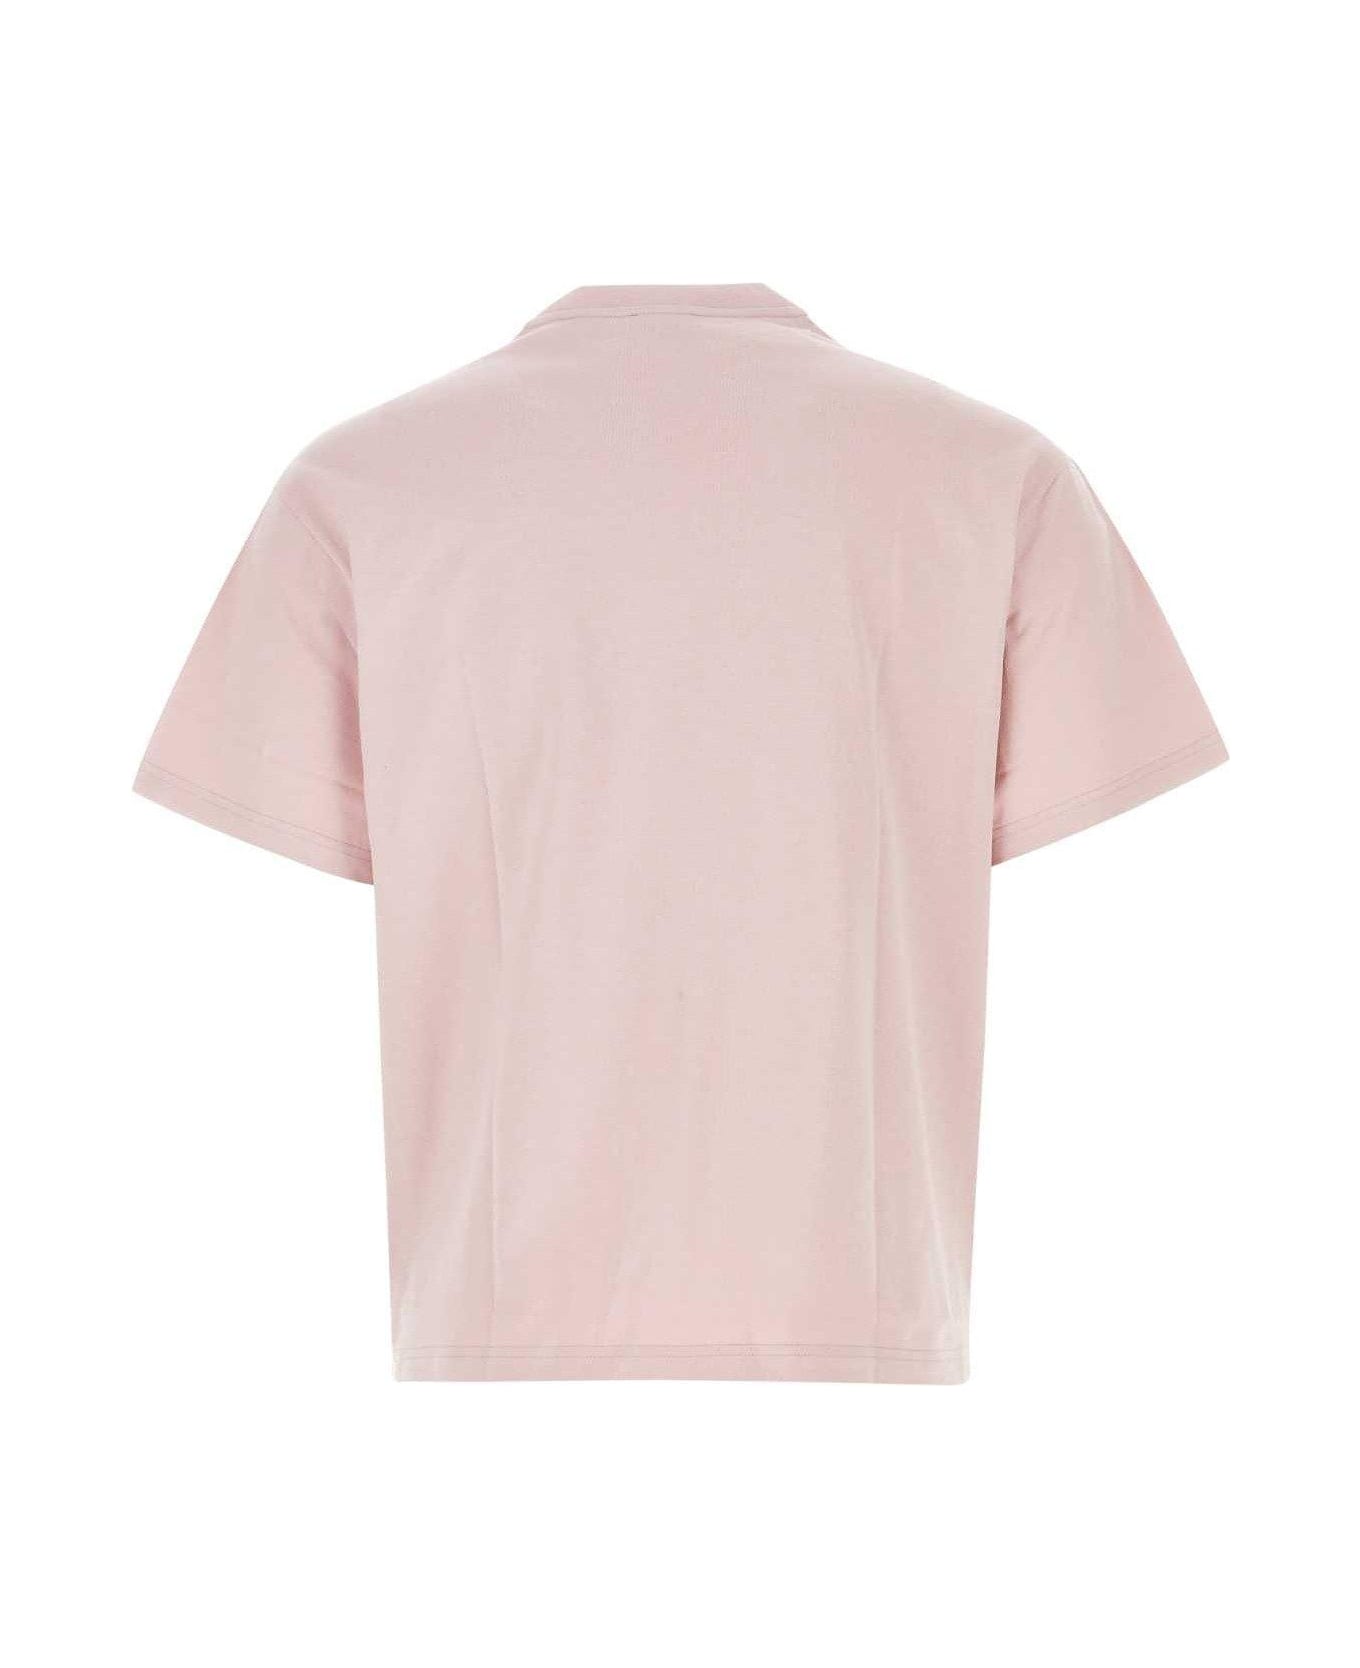 Etro Logo Printed Crewneck T-shirt - Pink シャツ